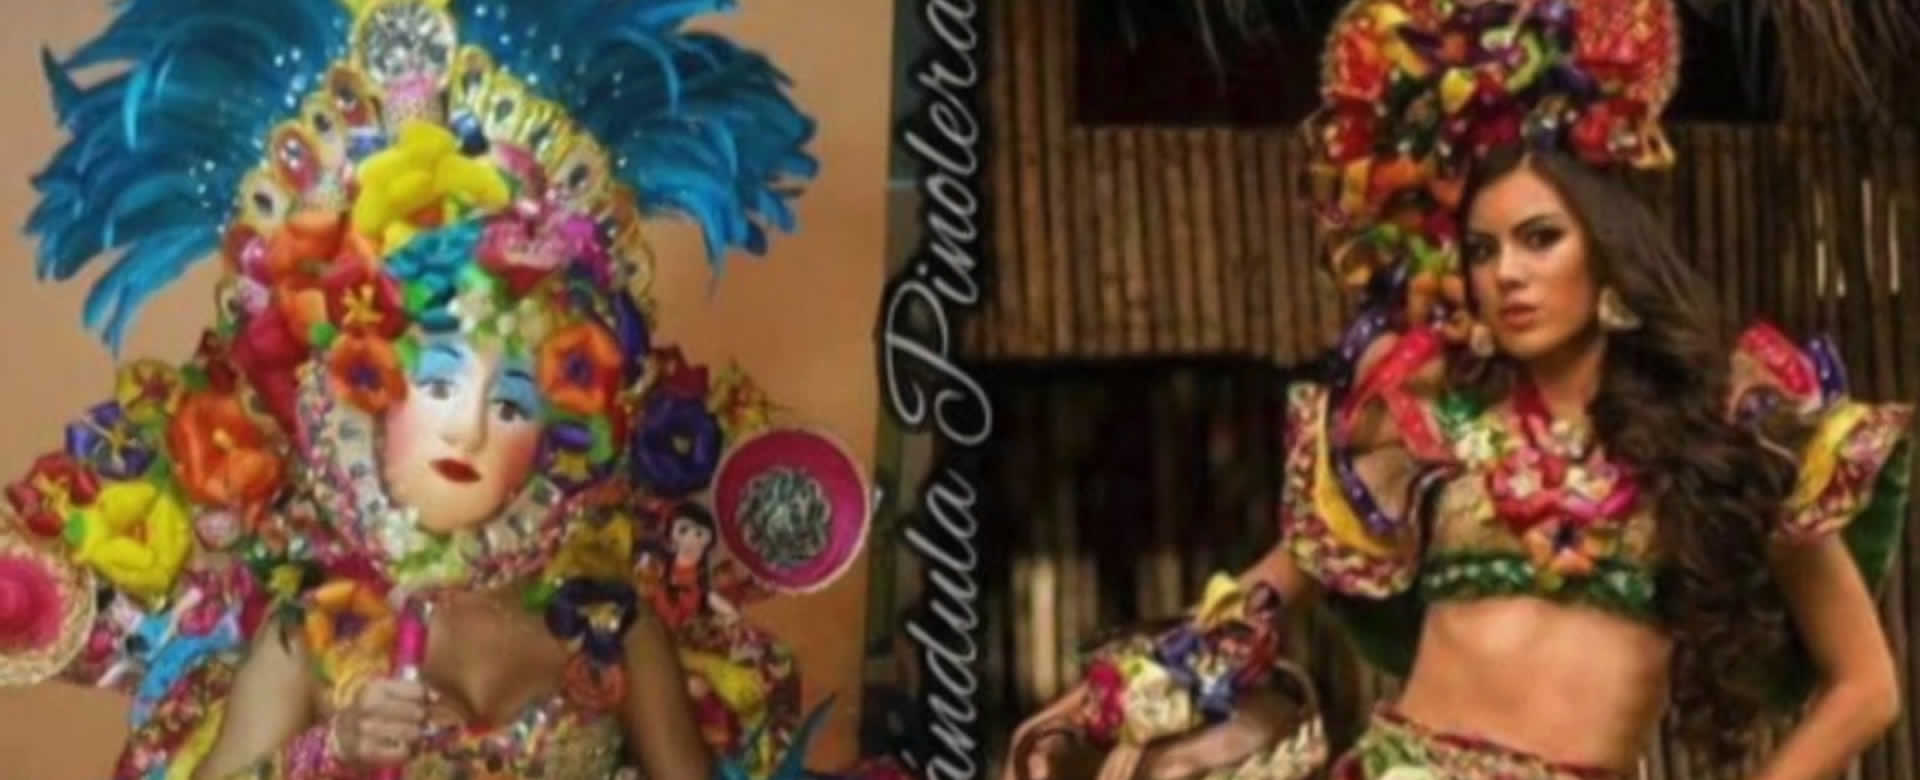 ¿Traje Nacional o piñata? Conozca lo que usará Nicaragua en Miss Universo